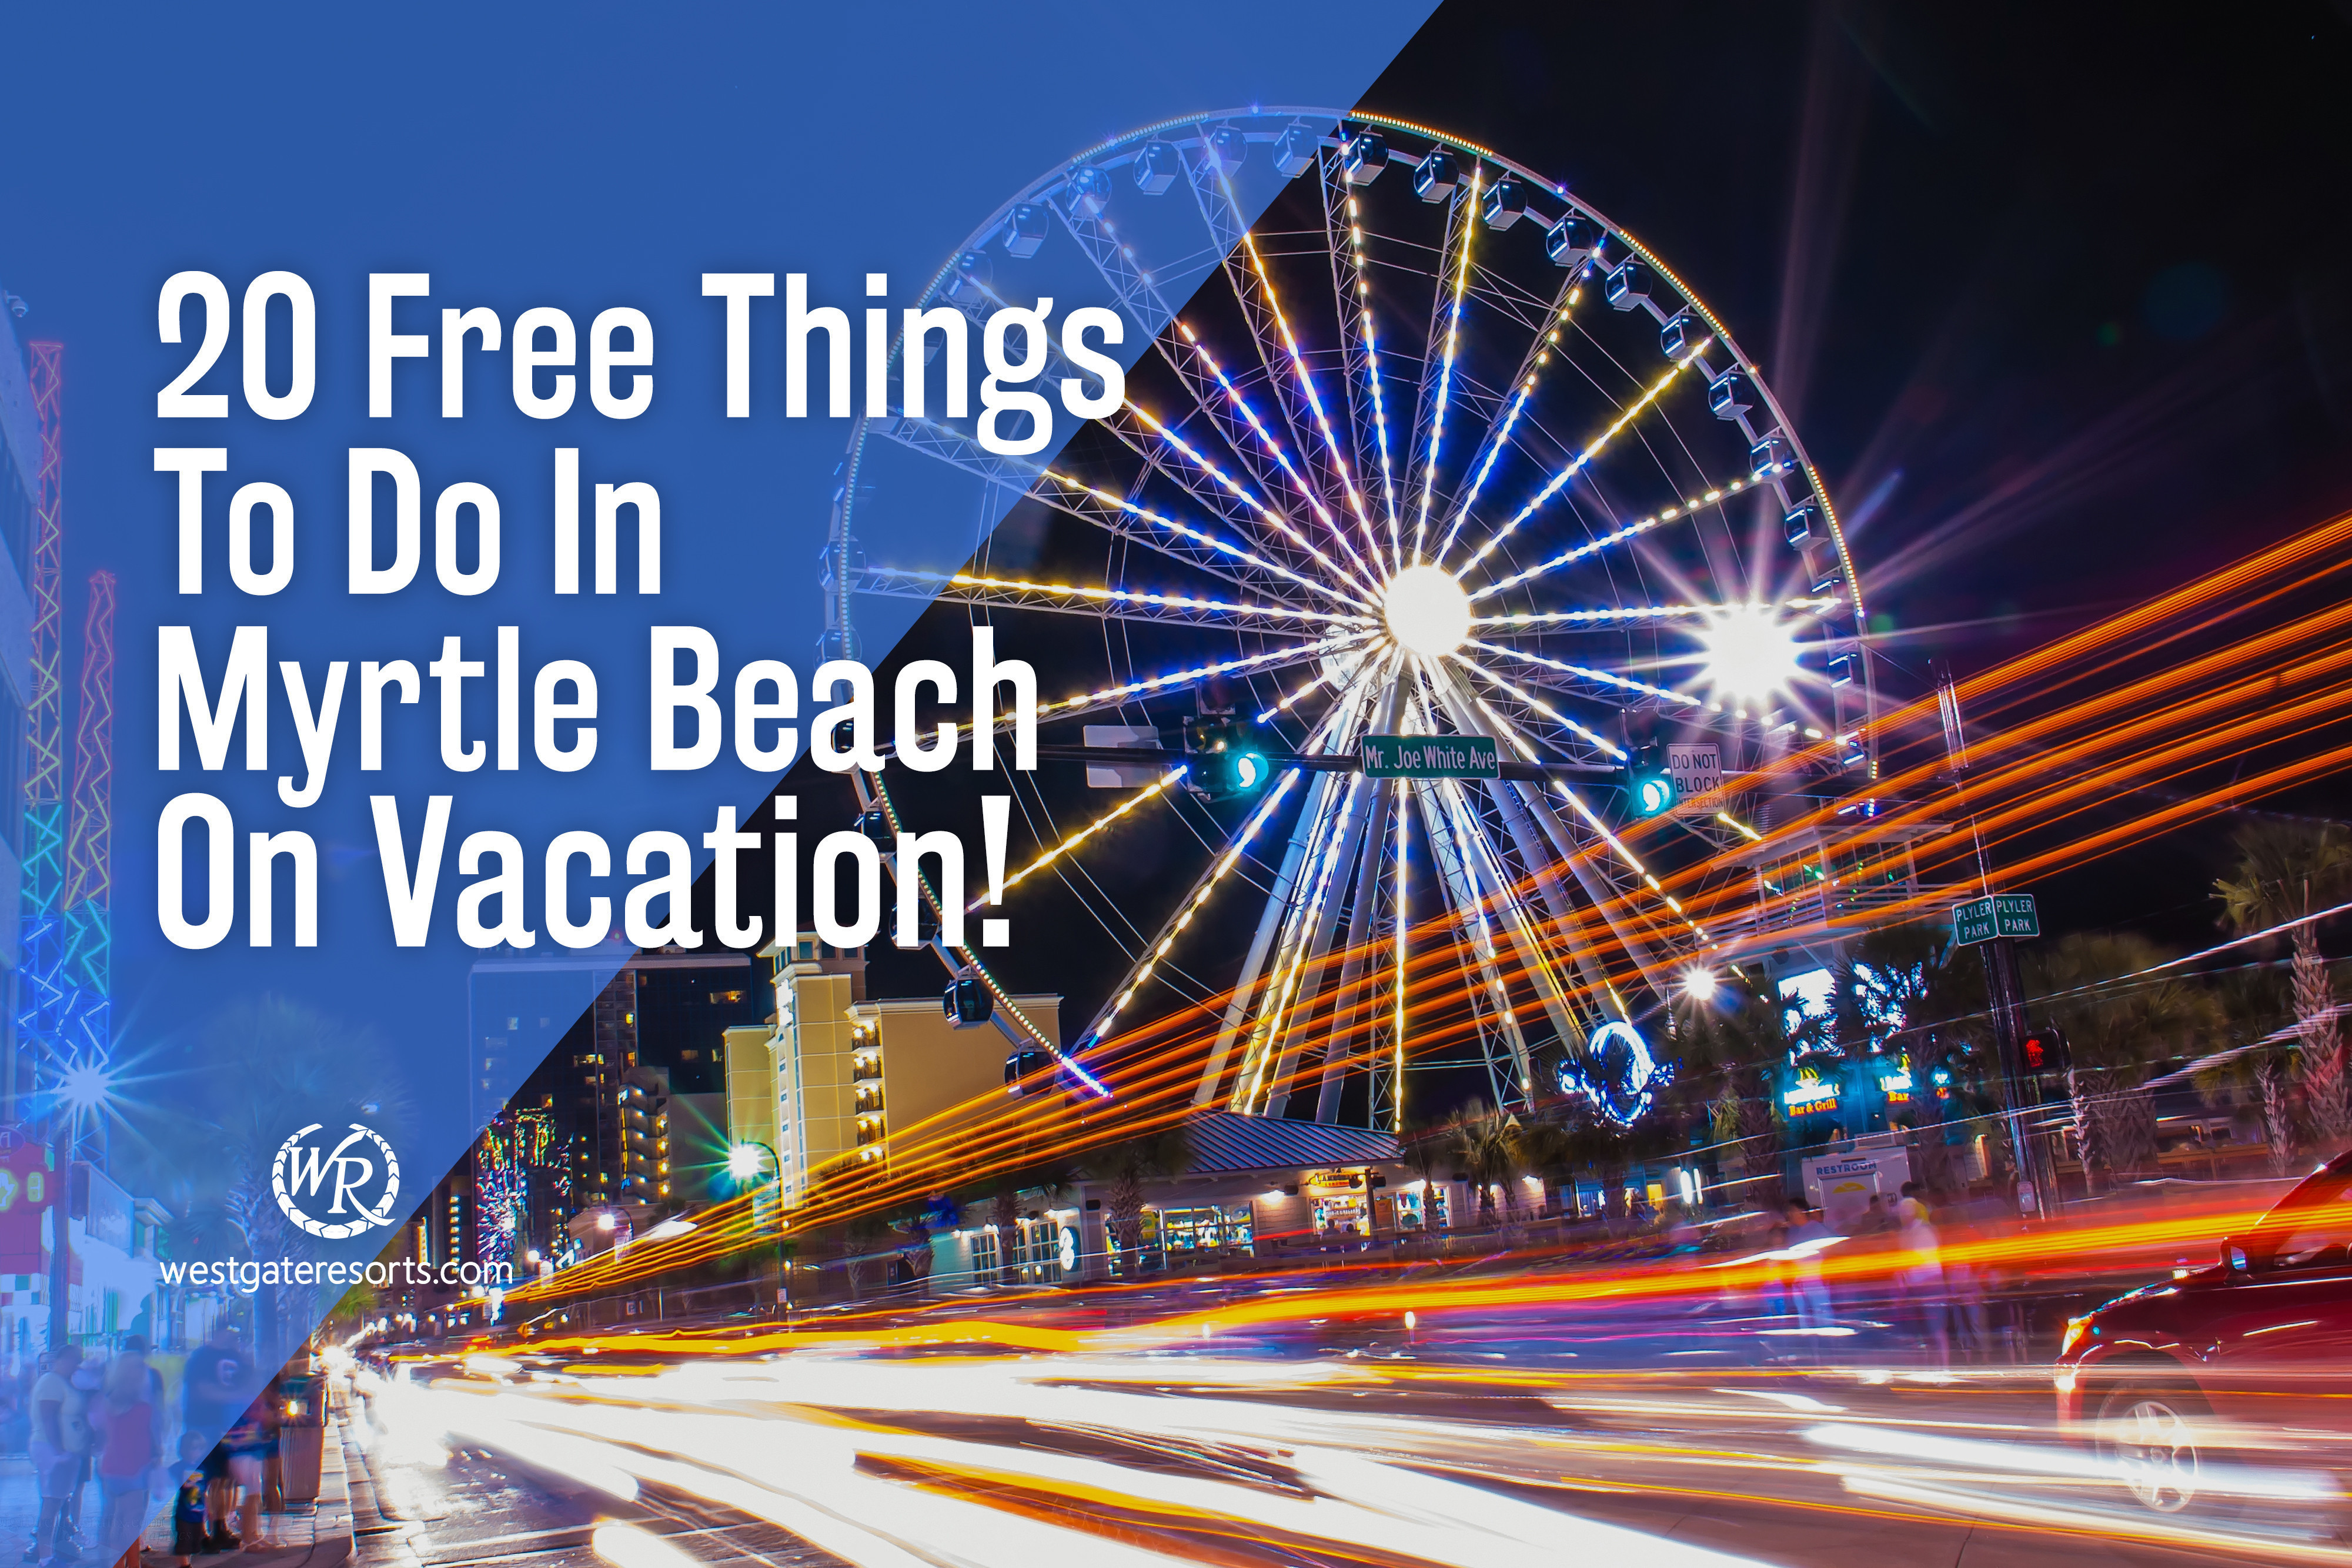 20 cosas gratis para hacer en Myrtle Beach durante las vacaciones | Actividades gratuitas en Myrtle Beach